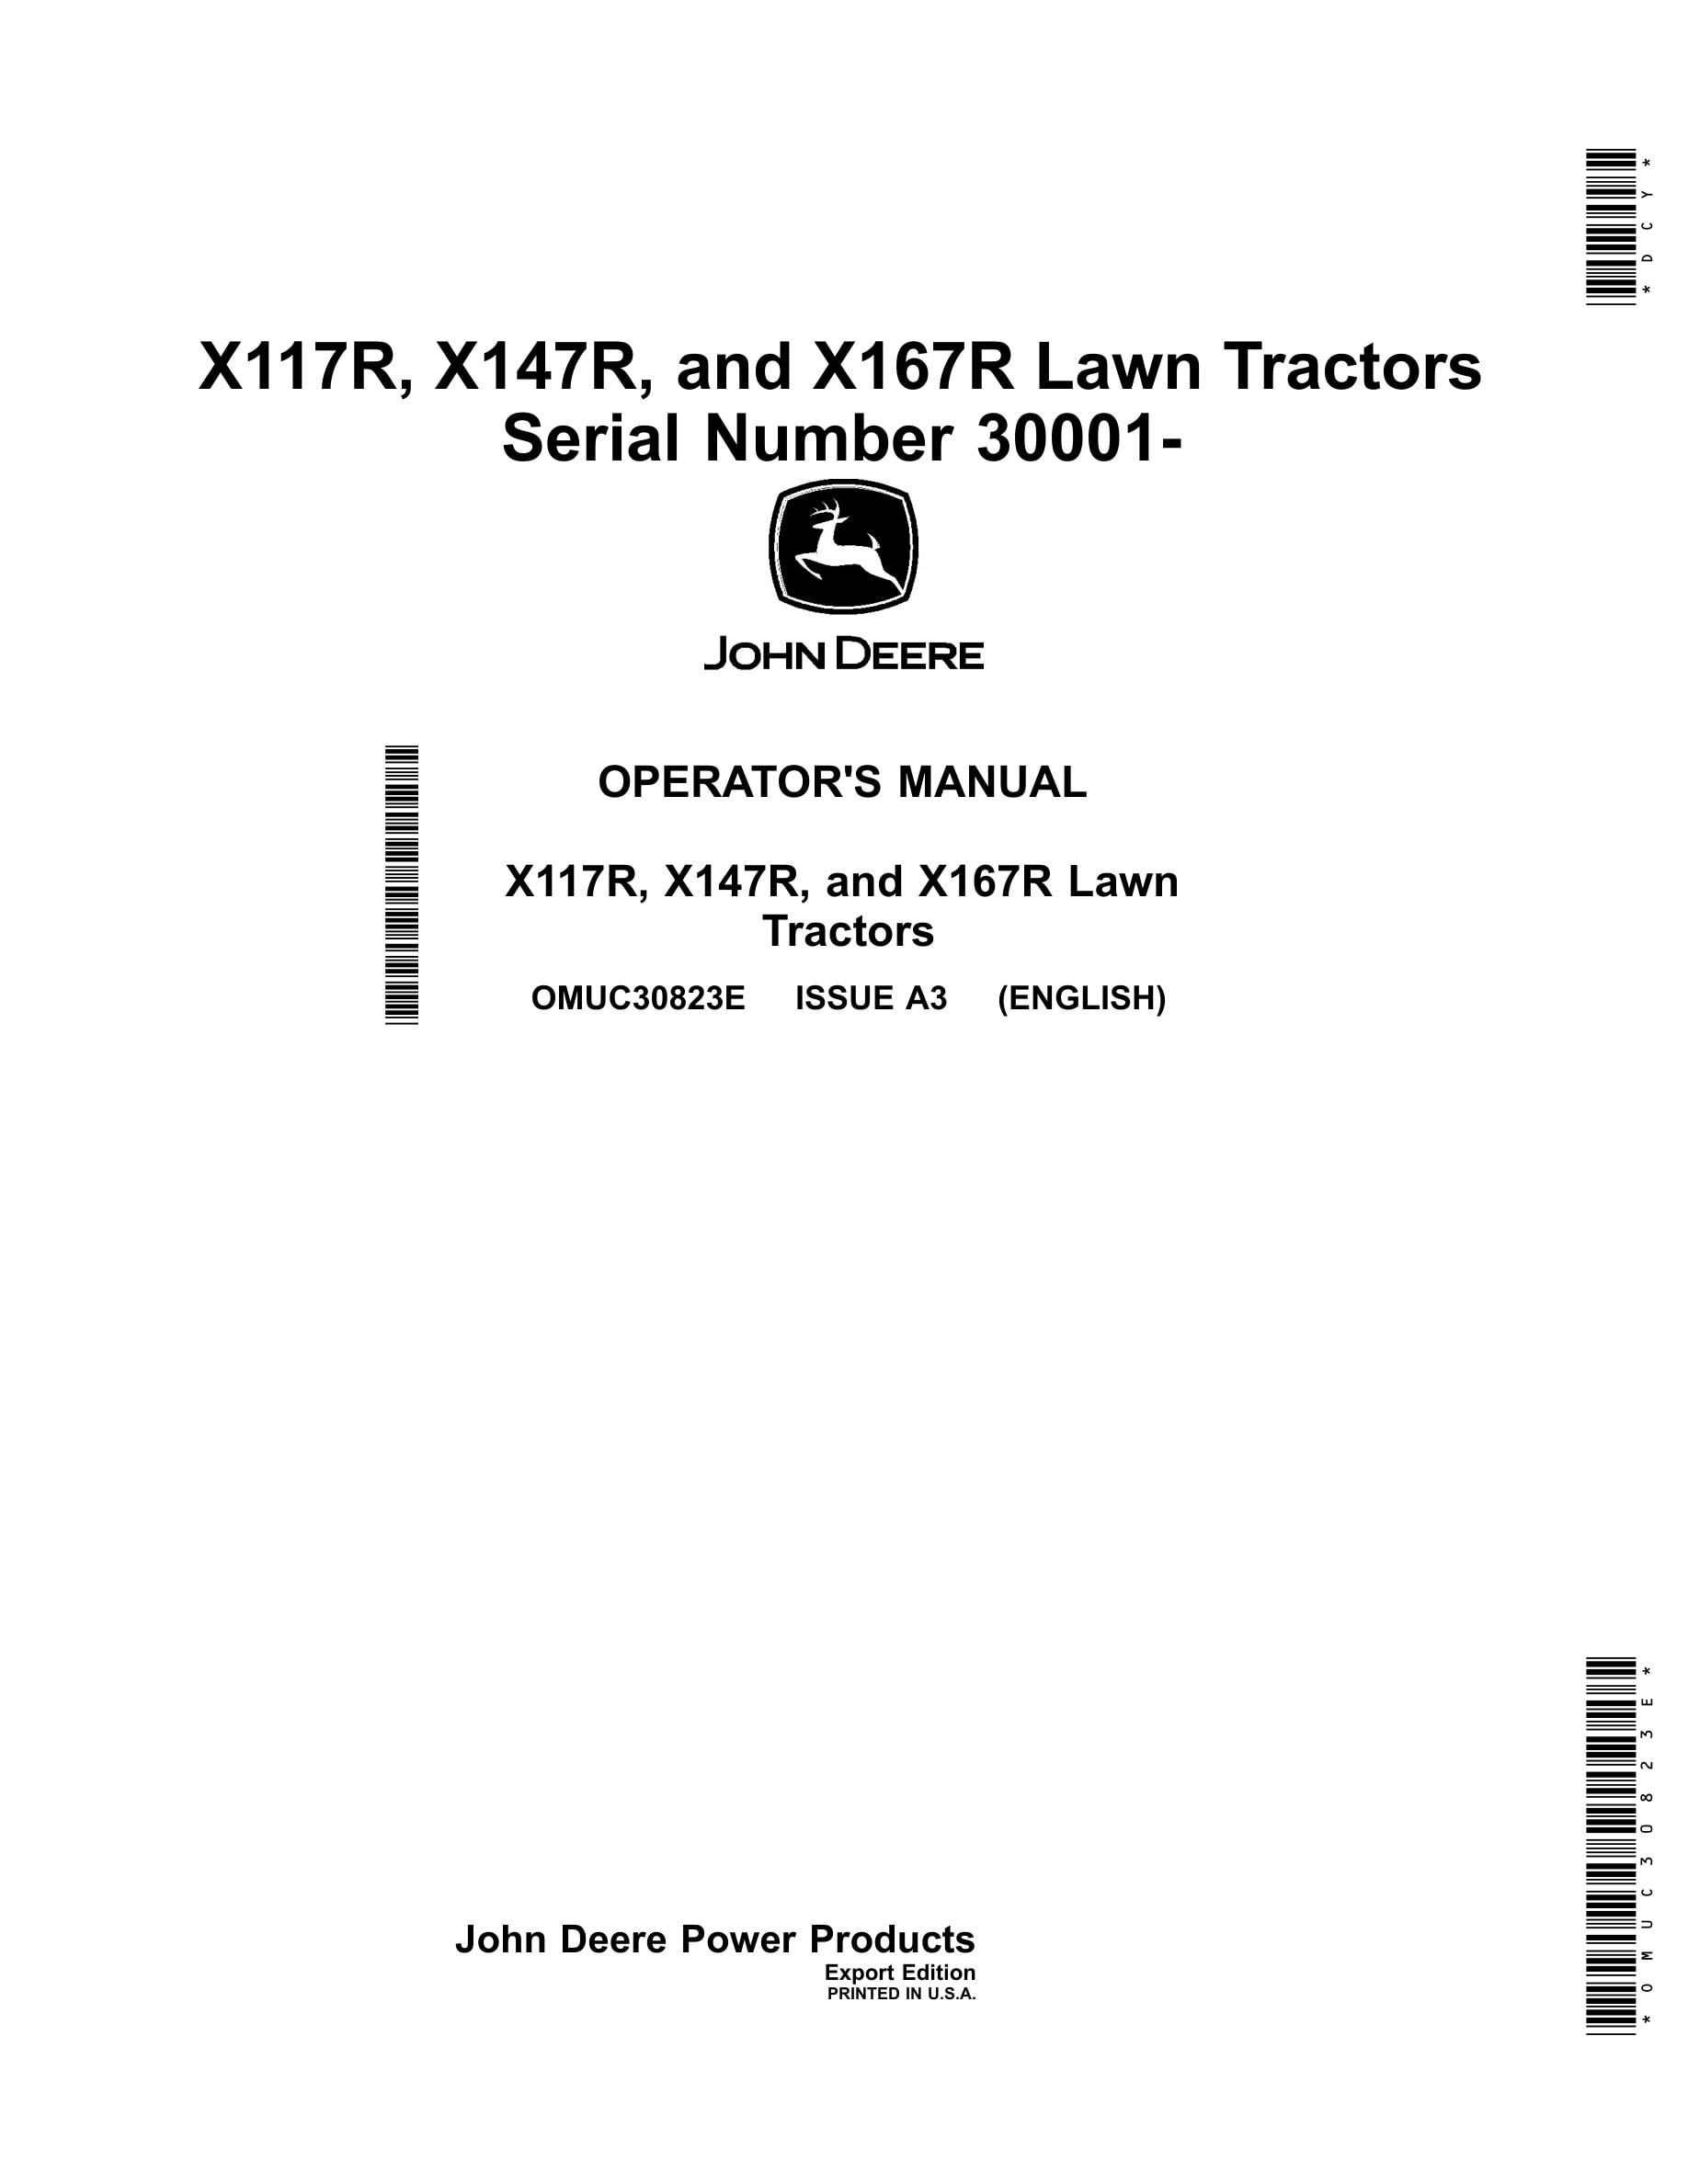 John Deere X117r, X147r, And X167r Lawn Tractors Operator Manuals OMUC30823e-1